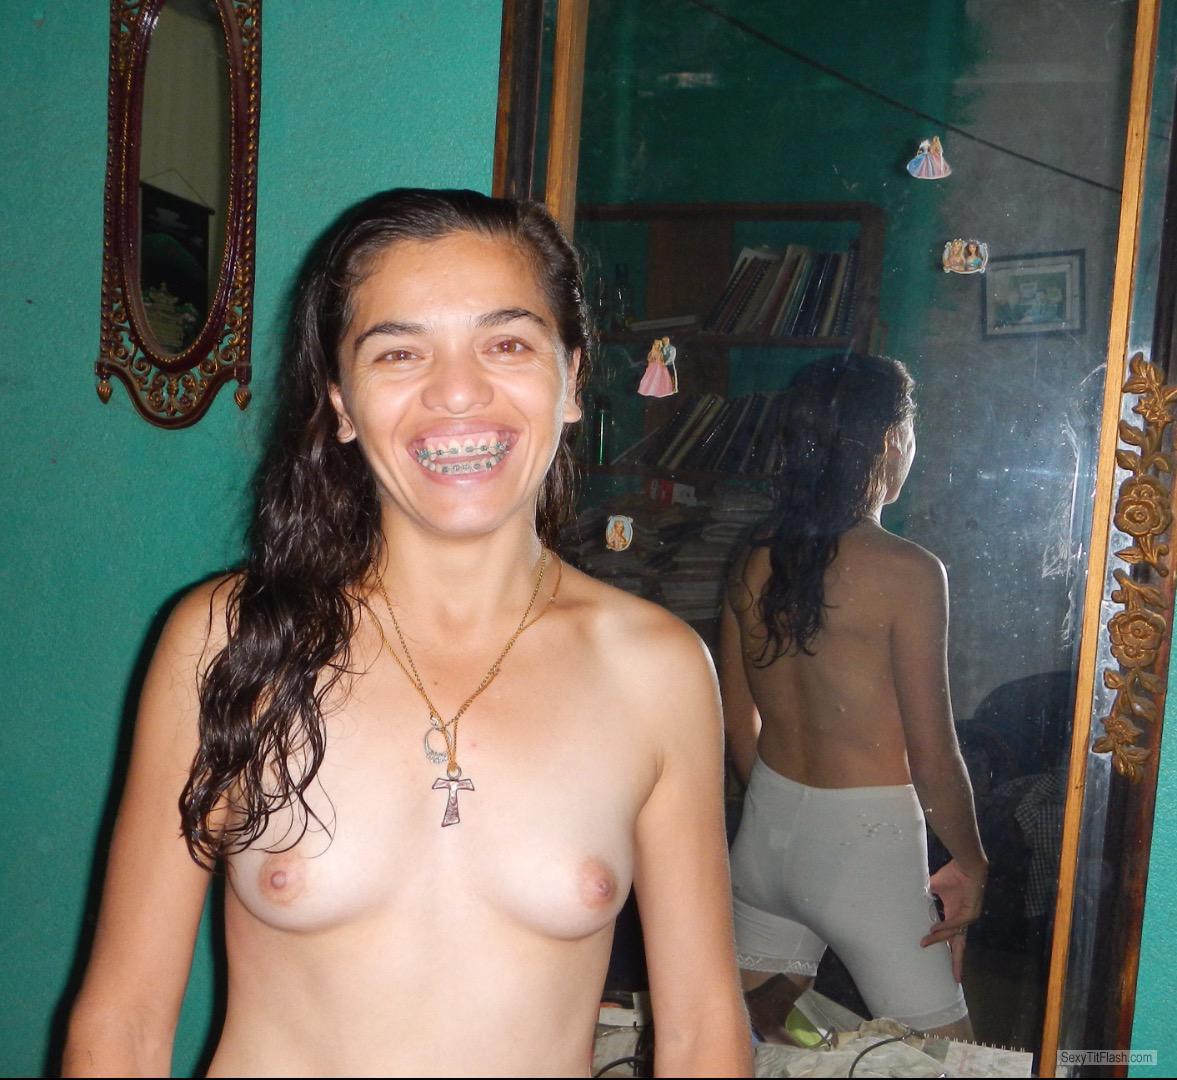 Mein Kleiner Busen Topless Selbstporträt von Real Ex Nun